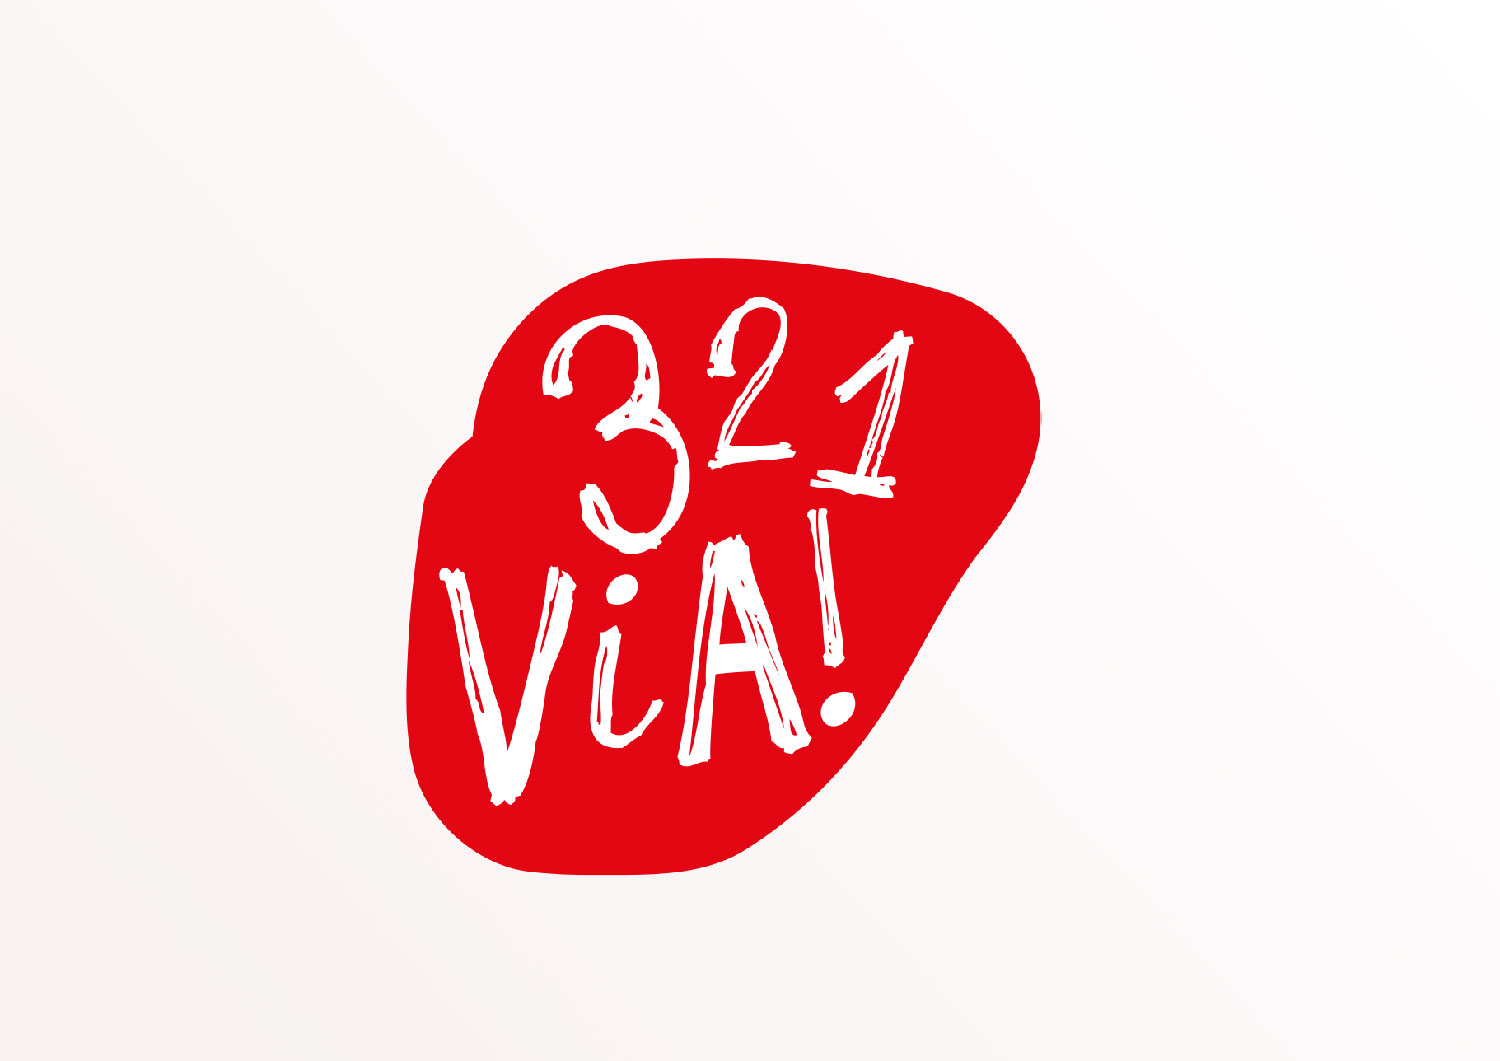 321 via logo